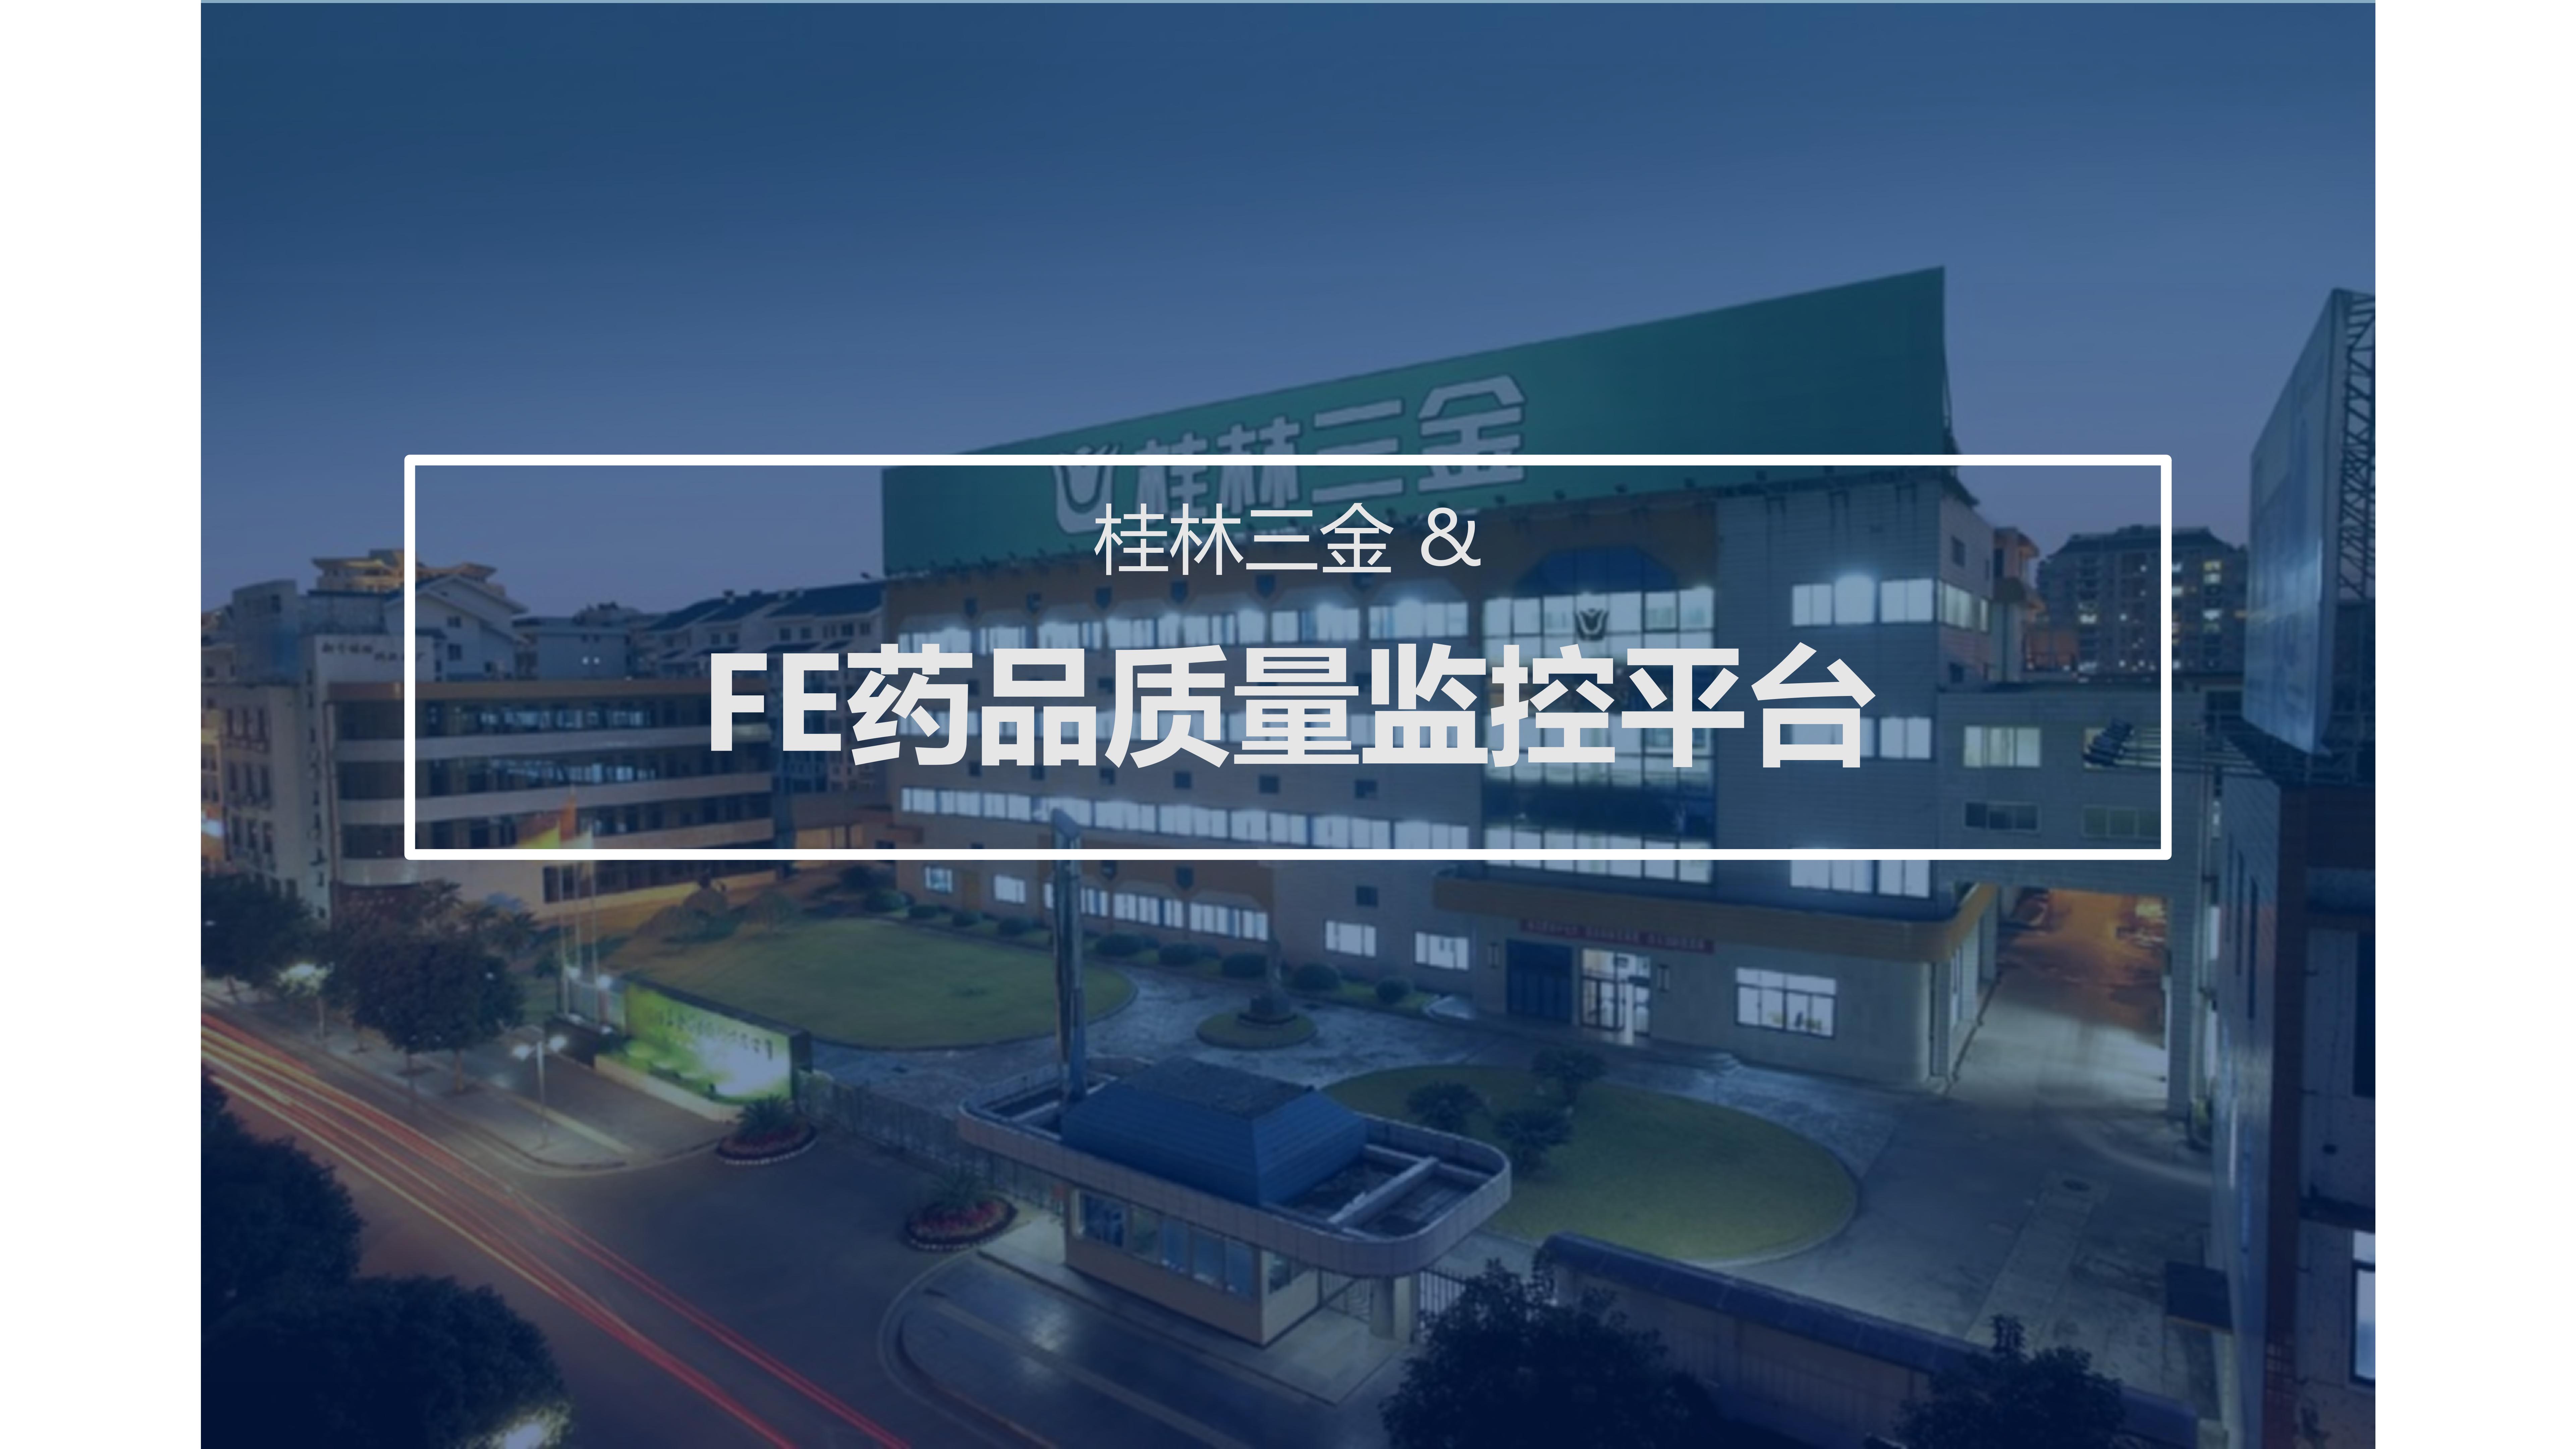 桂林三金 & FE药品质量监控平台